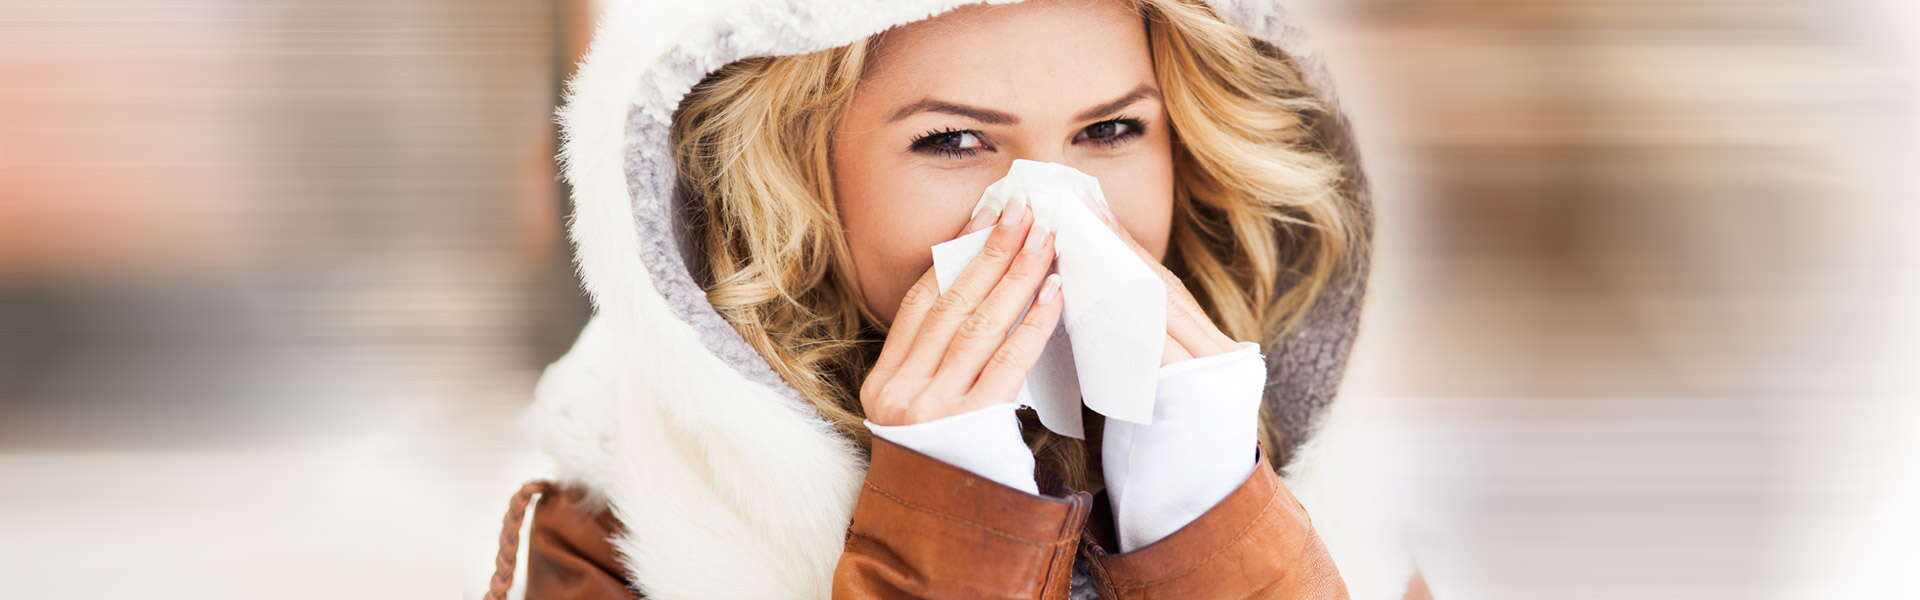 Come curare il raffreddore: sintomi, cause e rimedi